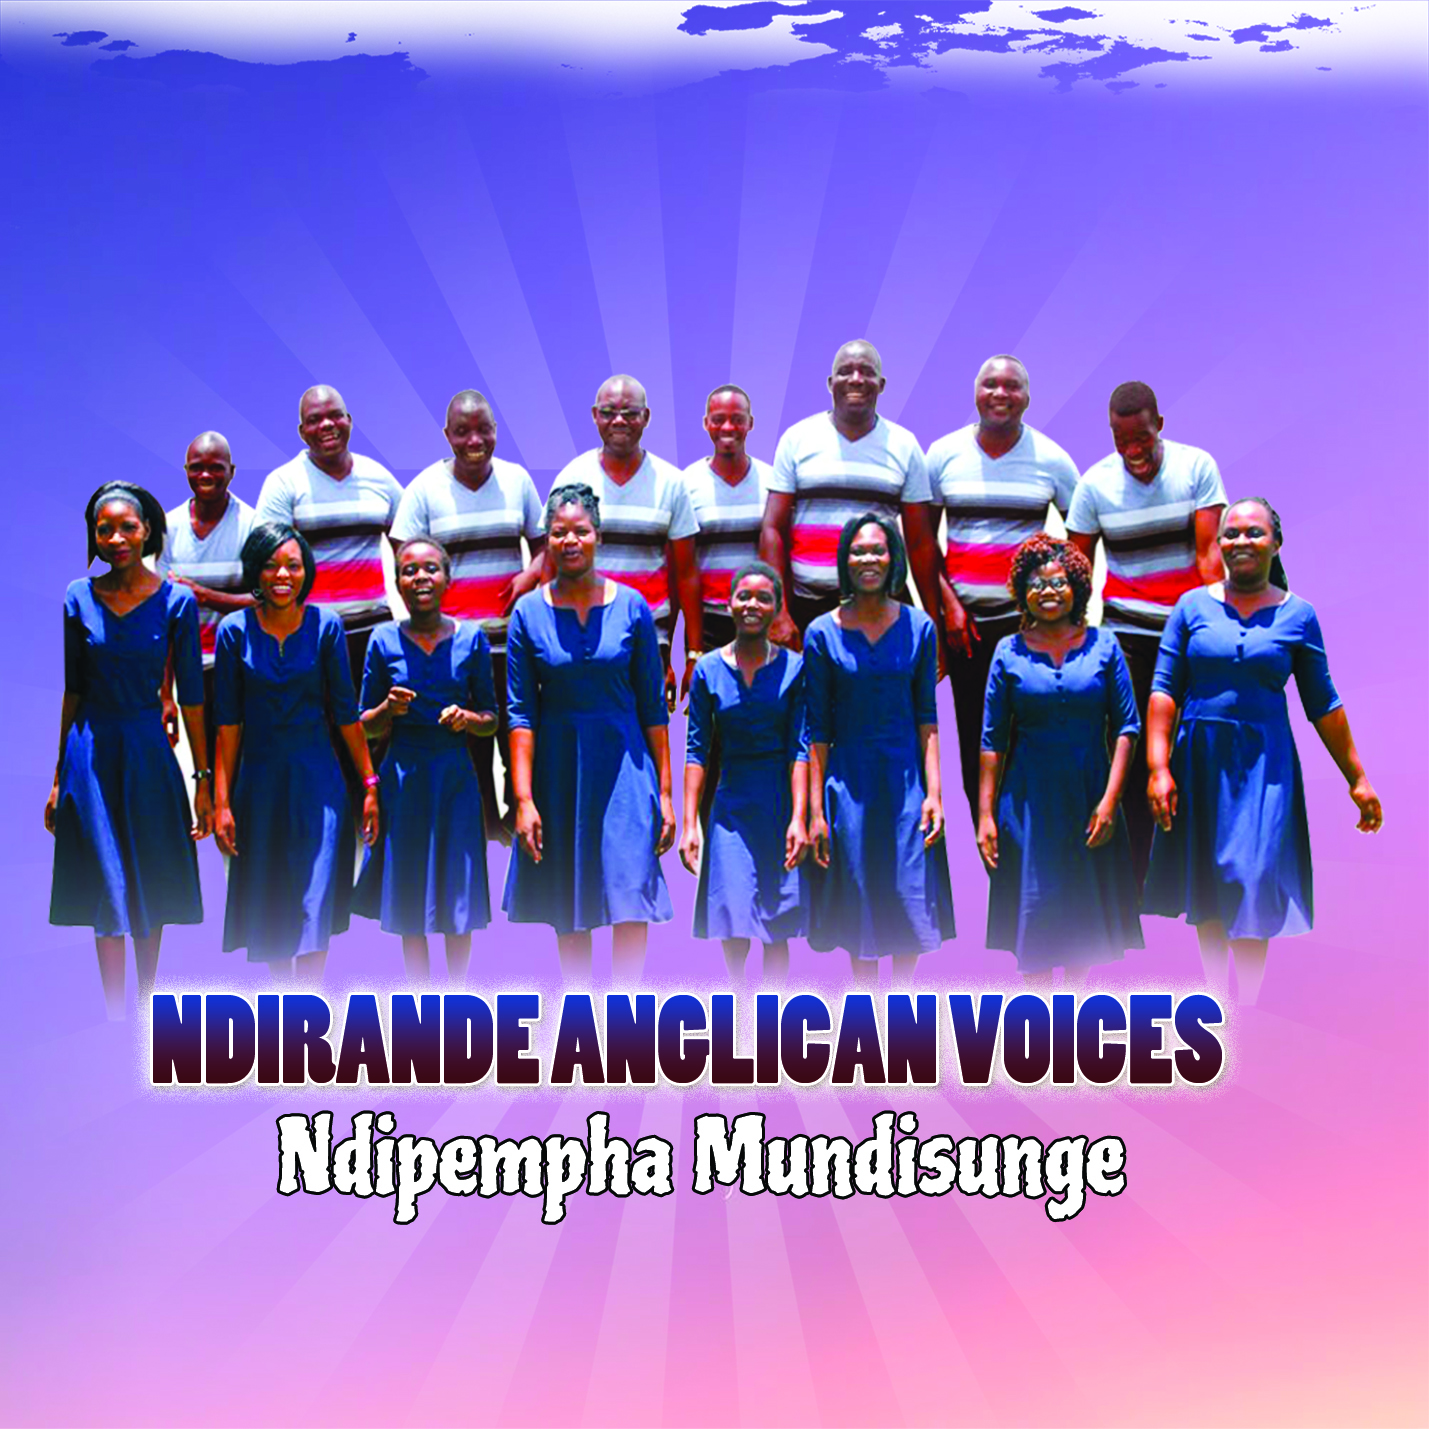  [Music Download]Ndirande Anglican Voices – Ndipempha Mundisunge